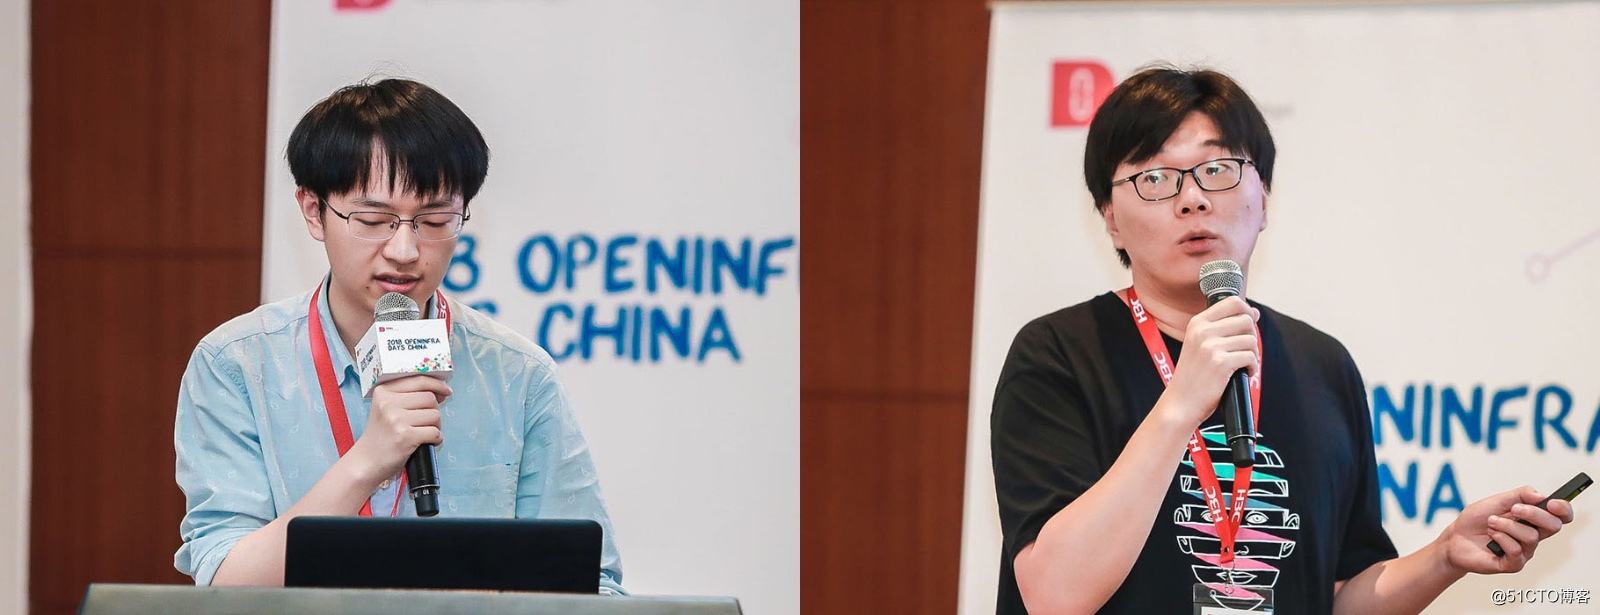 精彩议题回顾 | 2018 OpenInfra Days China，九州云火力全开